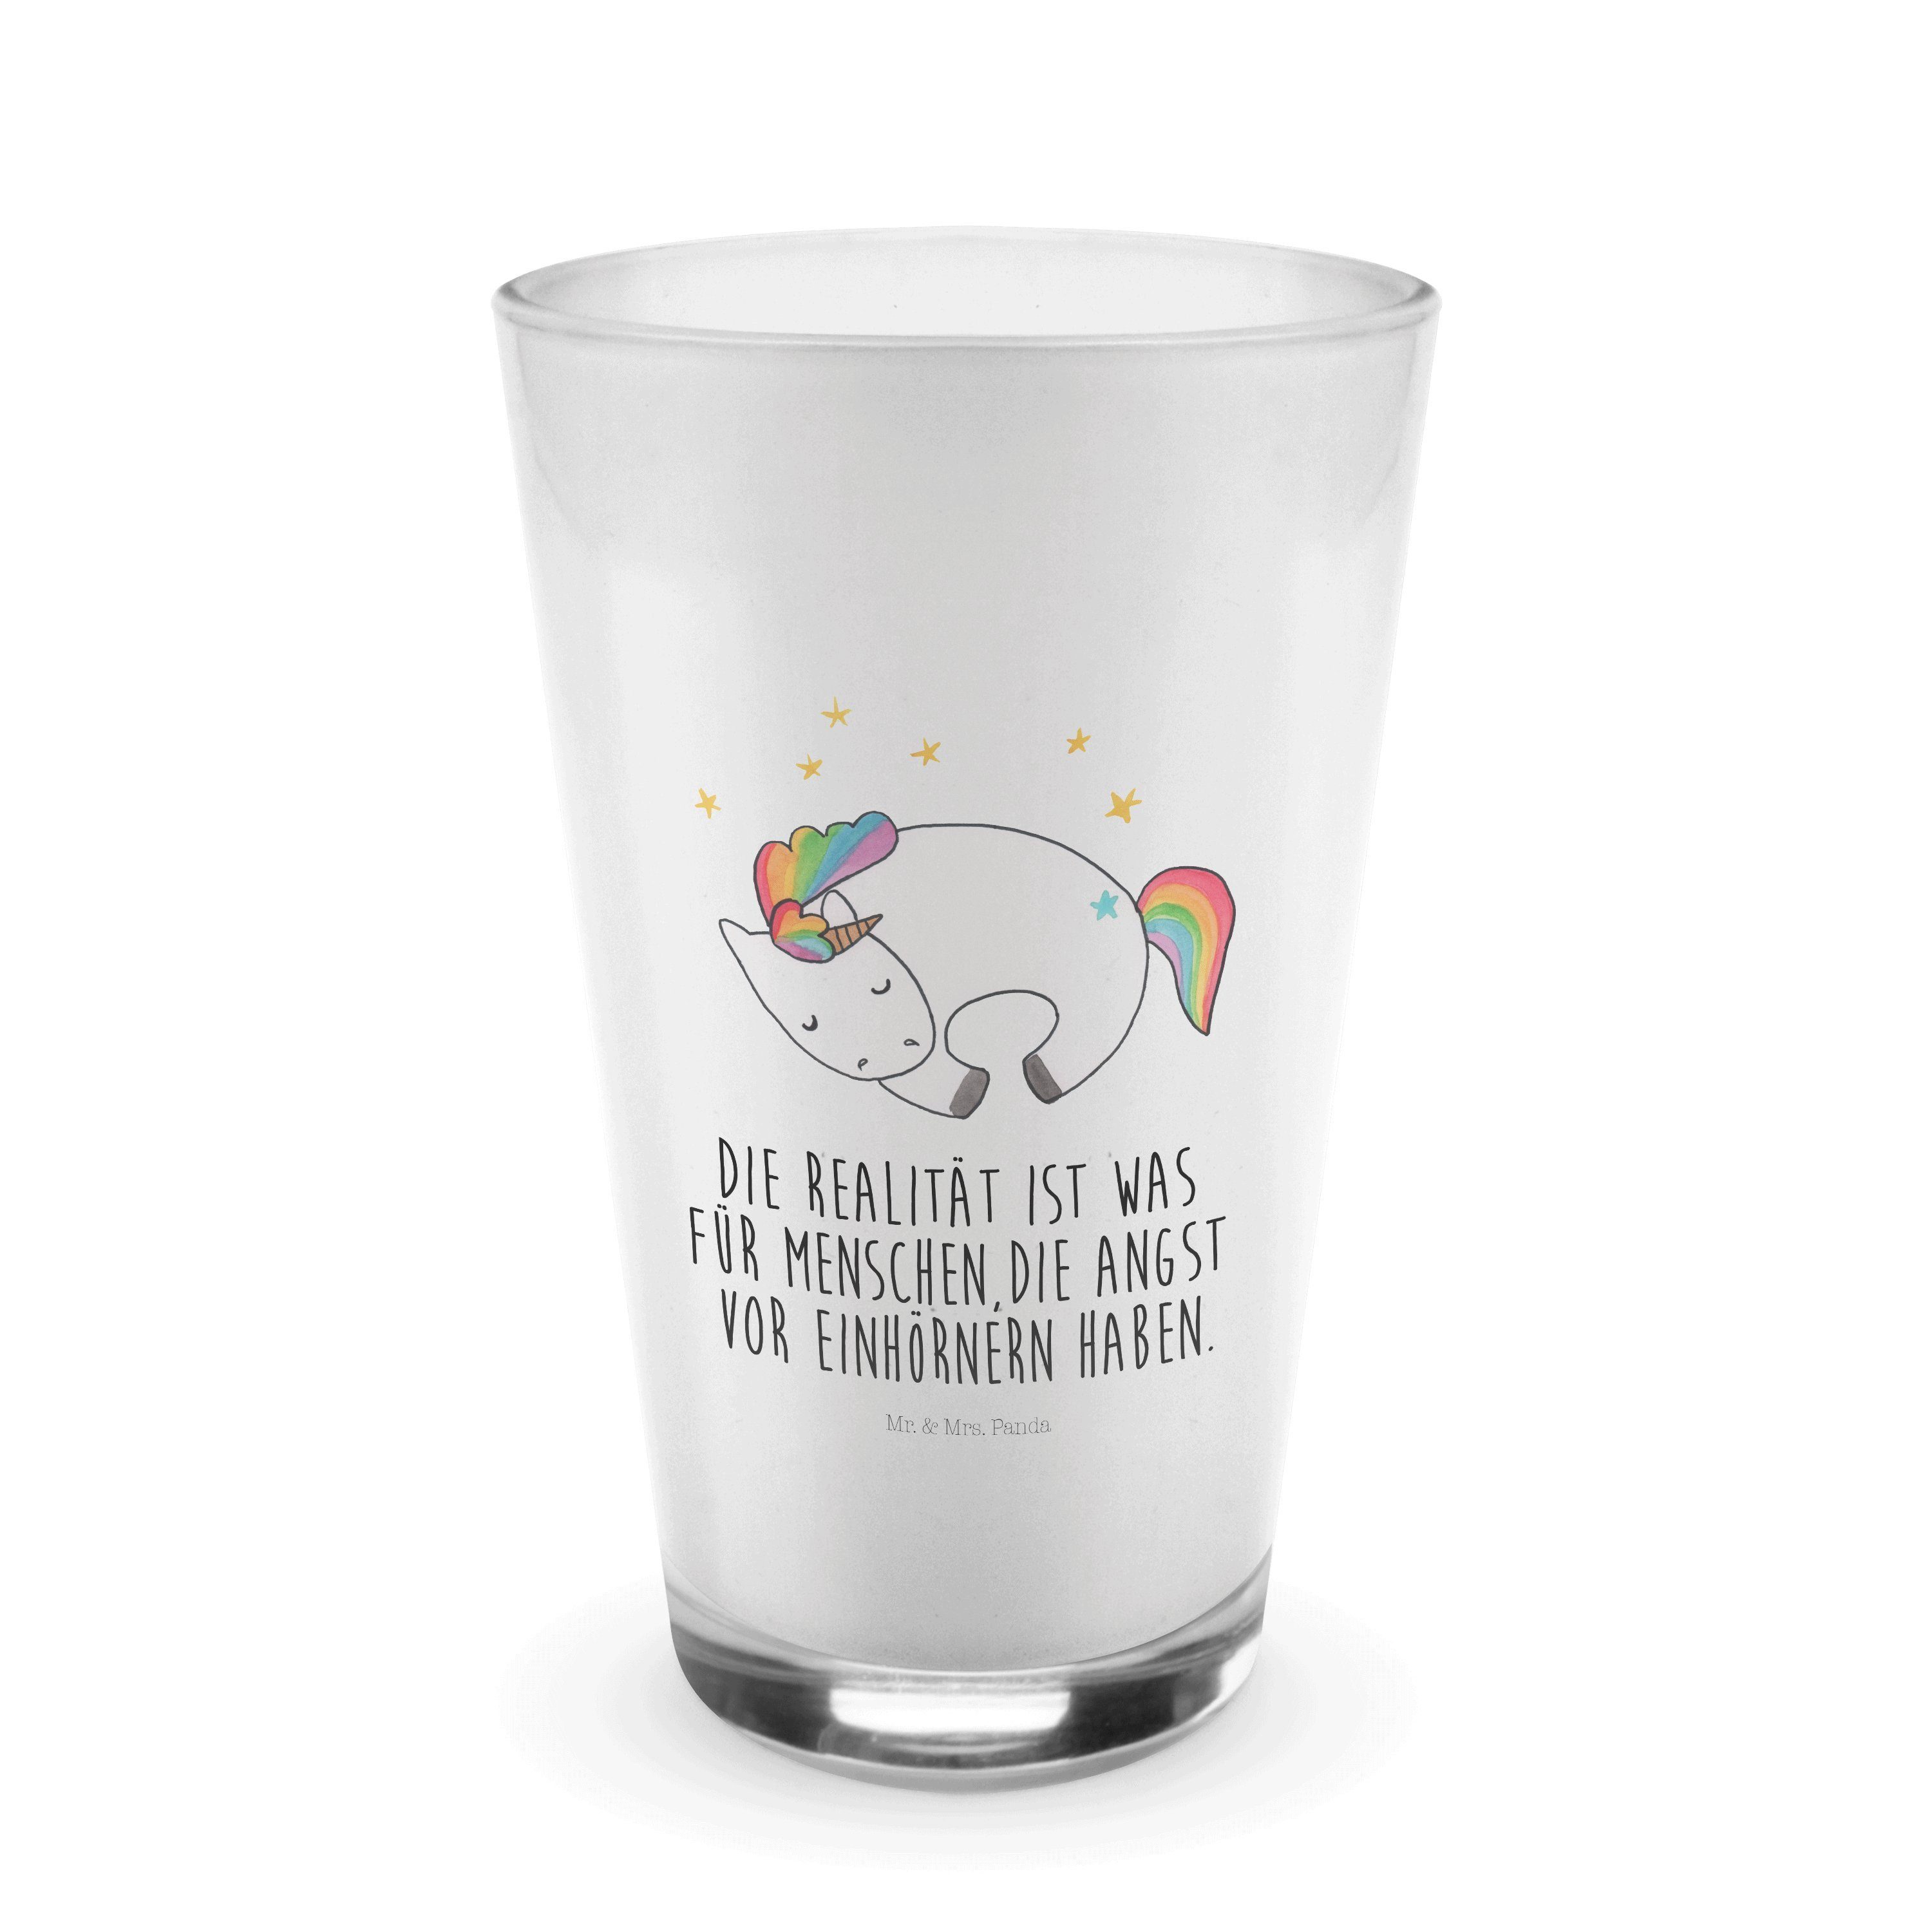 Mr. & Mrs. Panda Glas Einhorn Nacht - Transparent - Geschenk, Glas, Unicorn, Latte Macchiat, Premium Glas, Edles Matt-Design